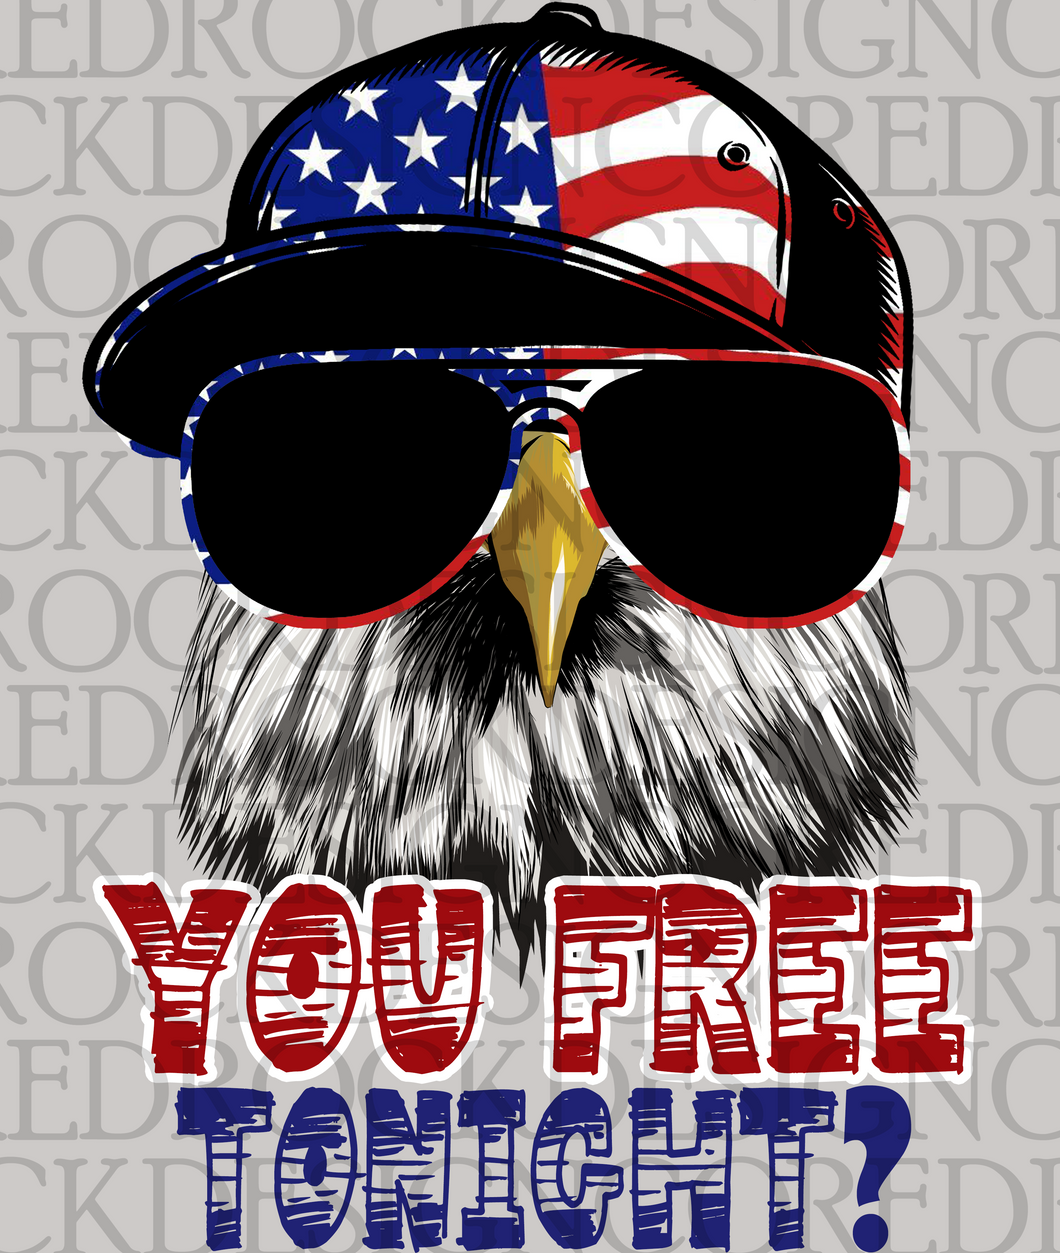 You Free Tonight? Eagle